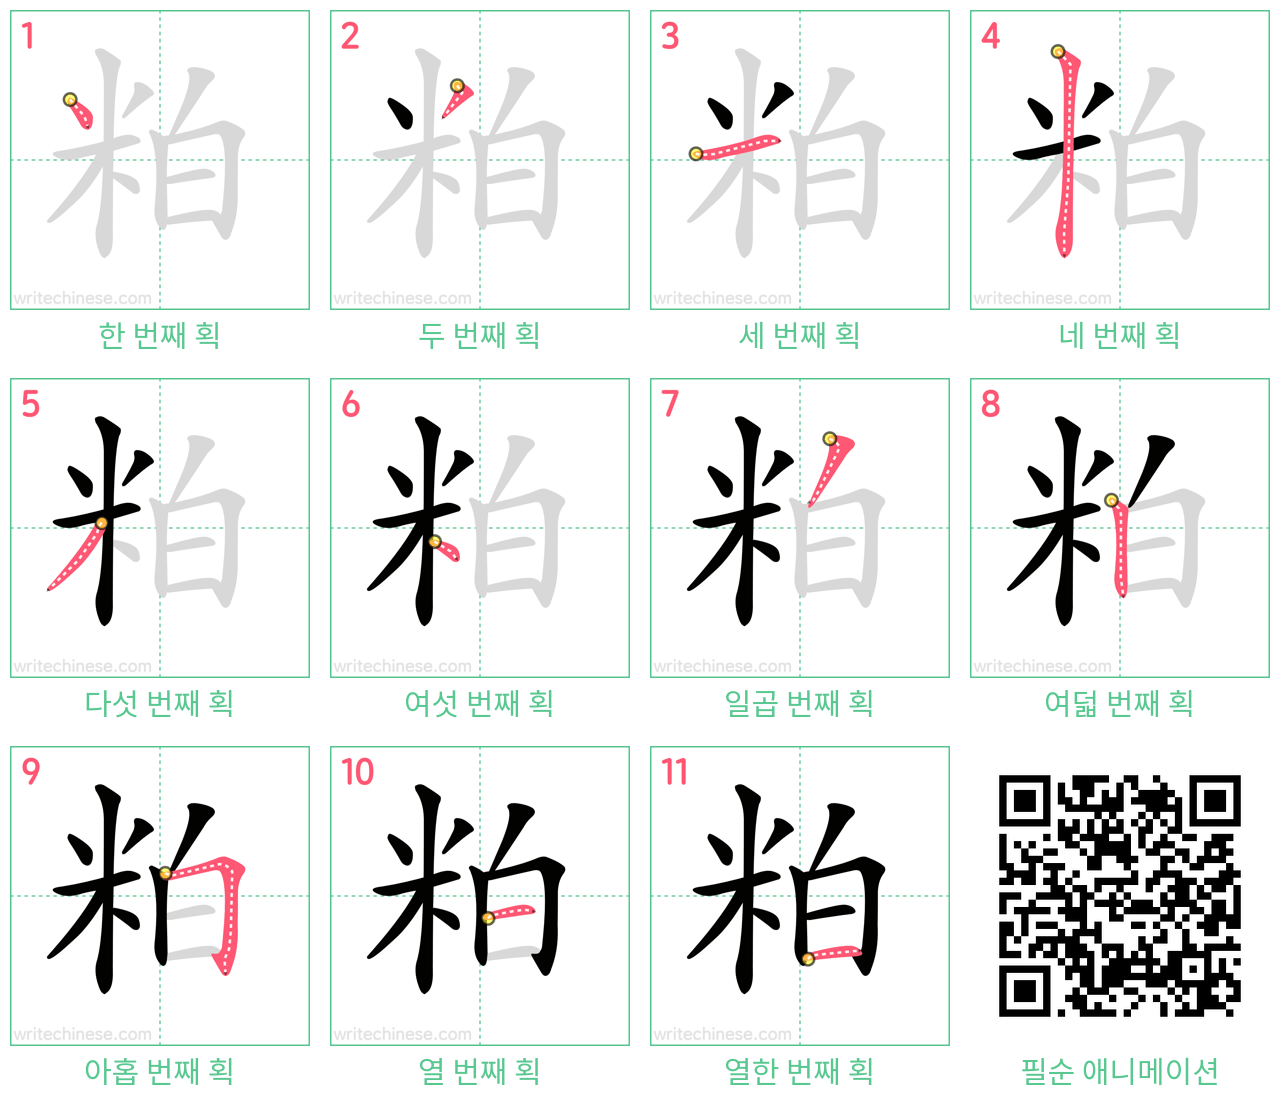 粕 step-by-step stroke order diagrams